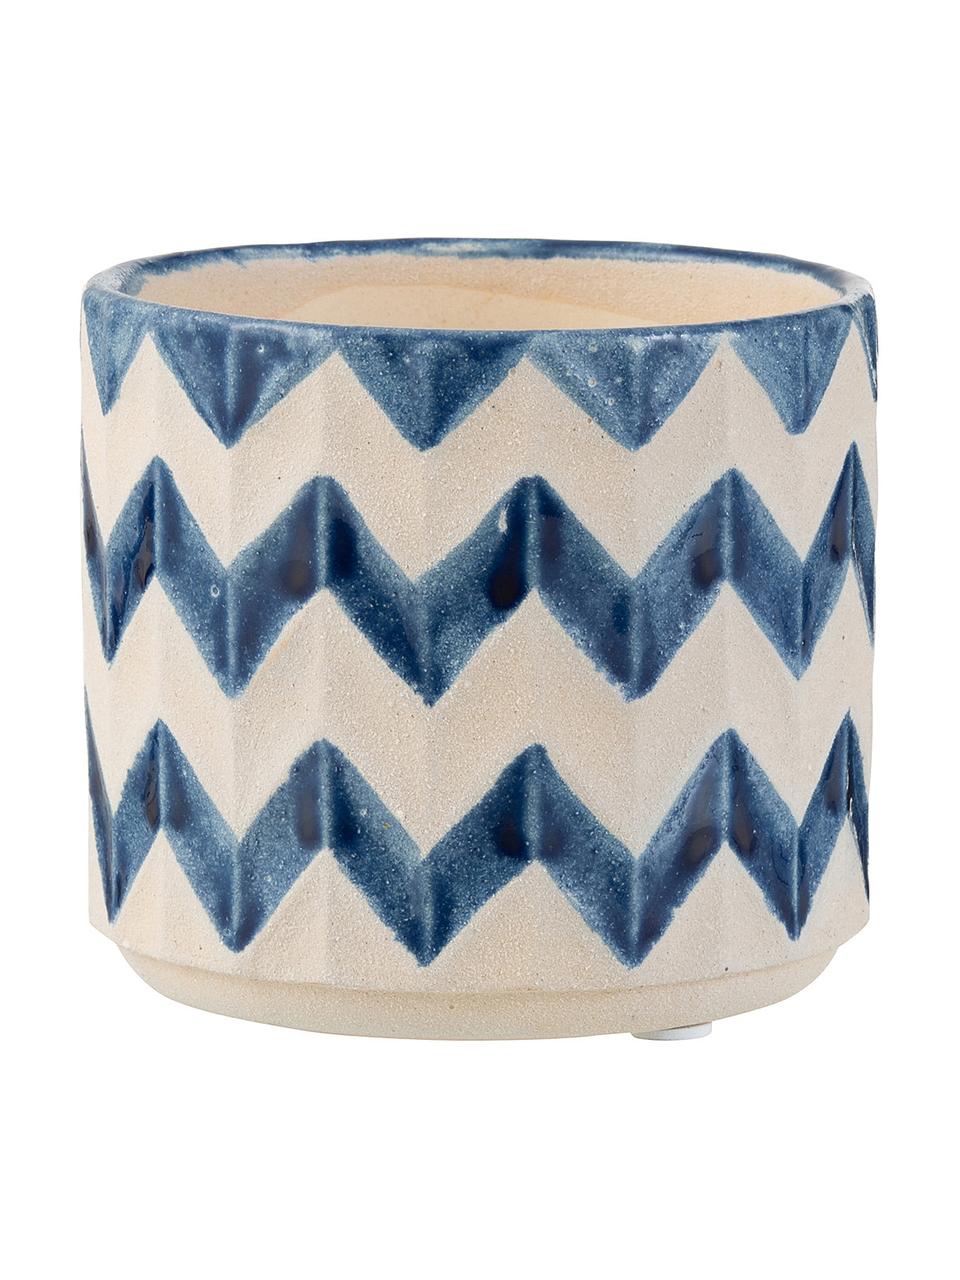 Portavaso piccolo Zigzag, Ceramica, Blu, beige chiaro, Ø 13 x Alt. 11 cm